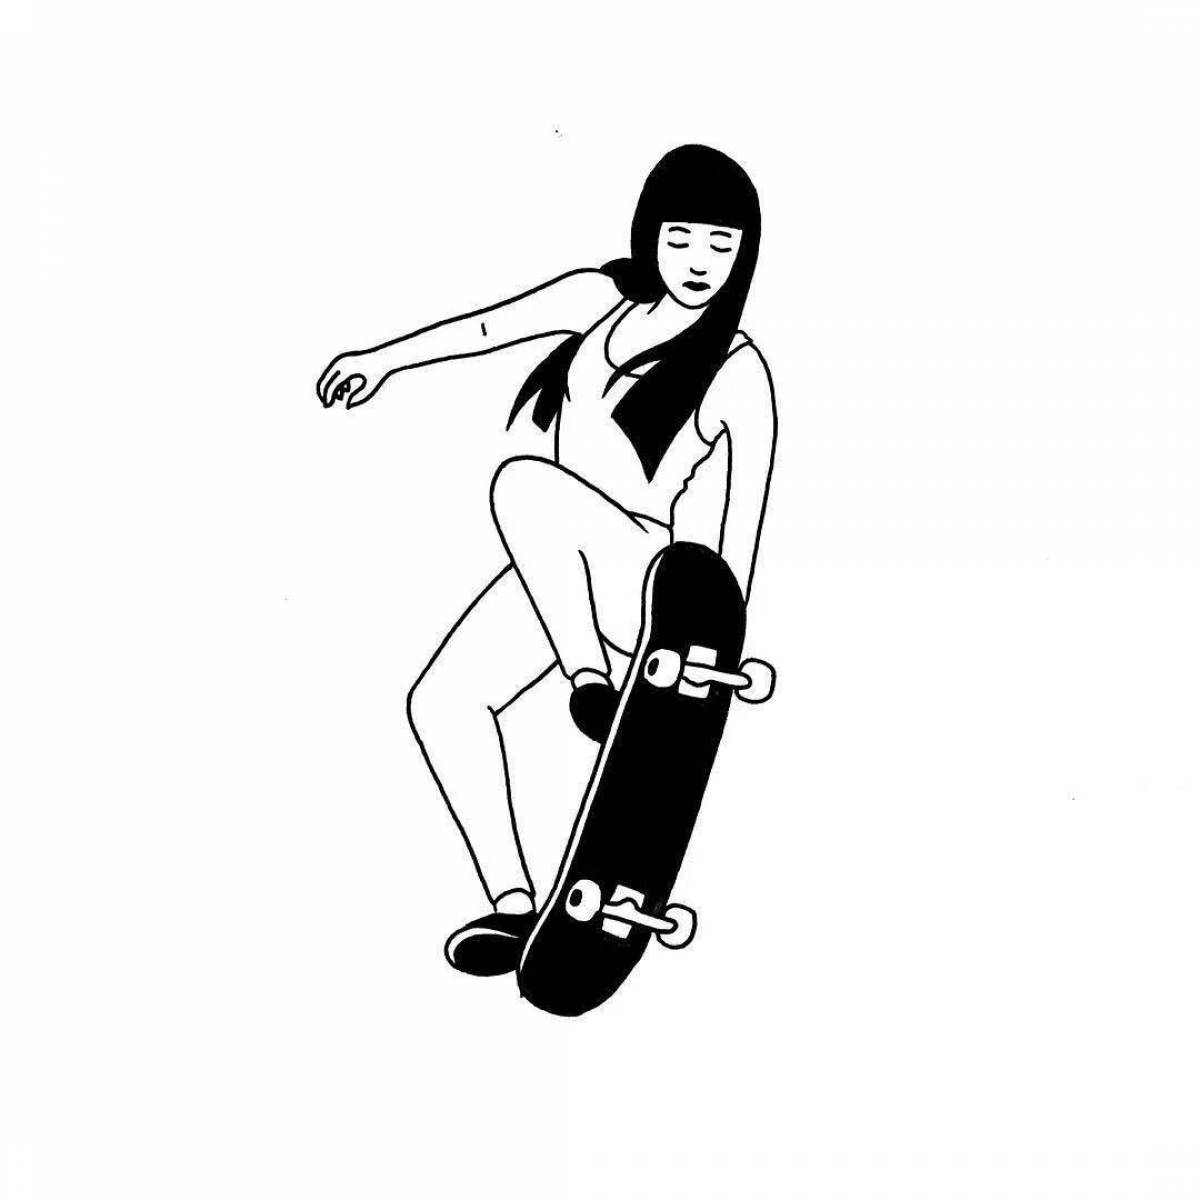 A brave girl on a skateboard